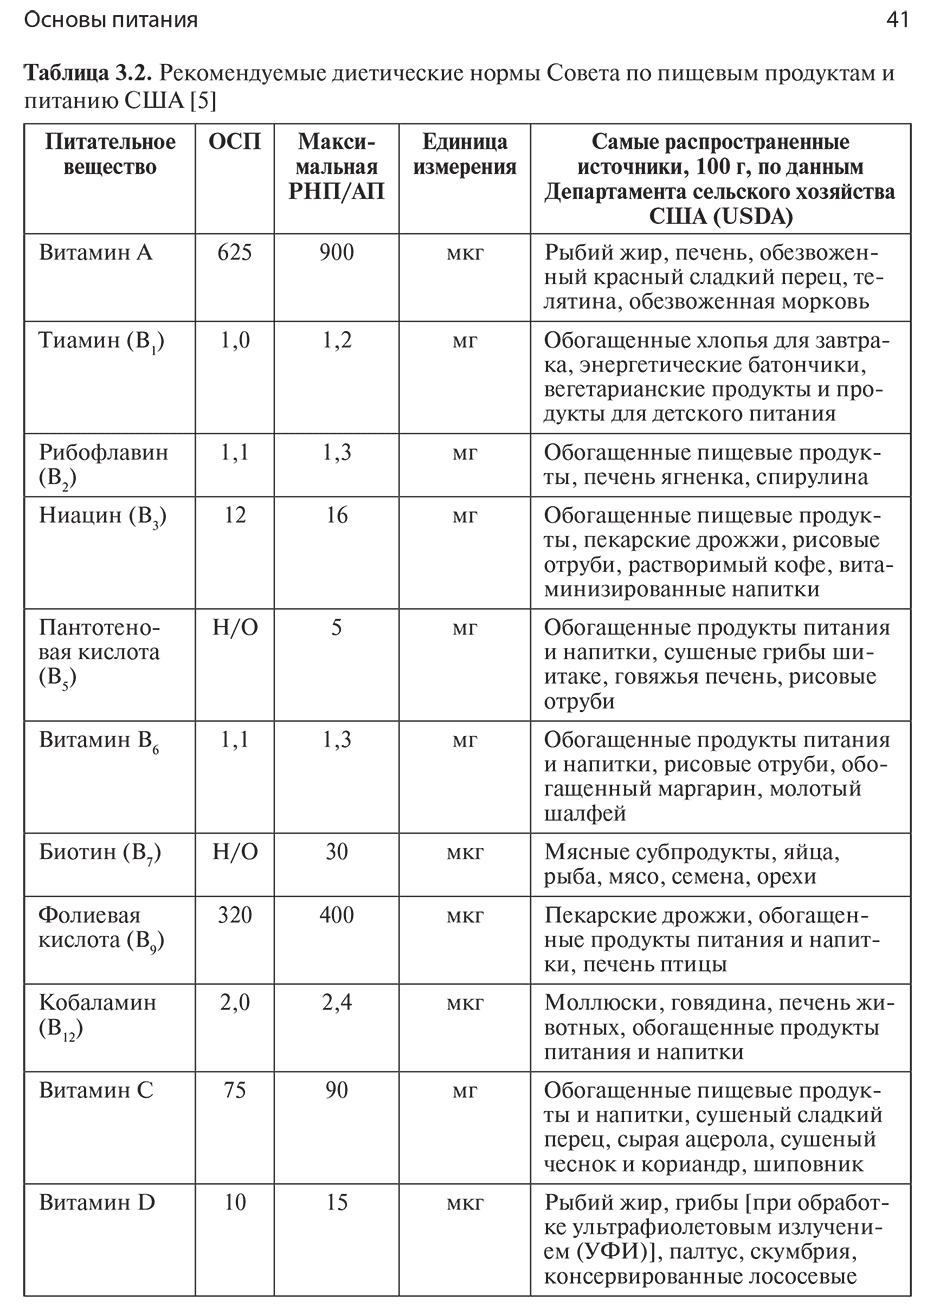 Таблица 3.2. Рекомендуемые диетические нормы Совета по пищевым продуктам и питанию США